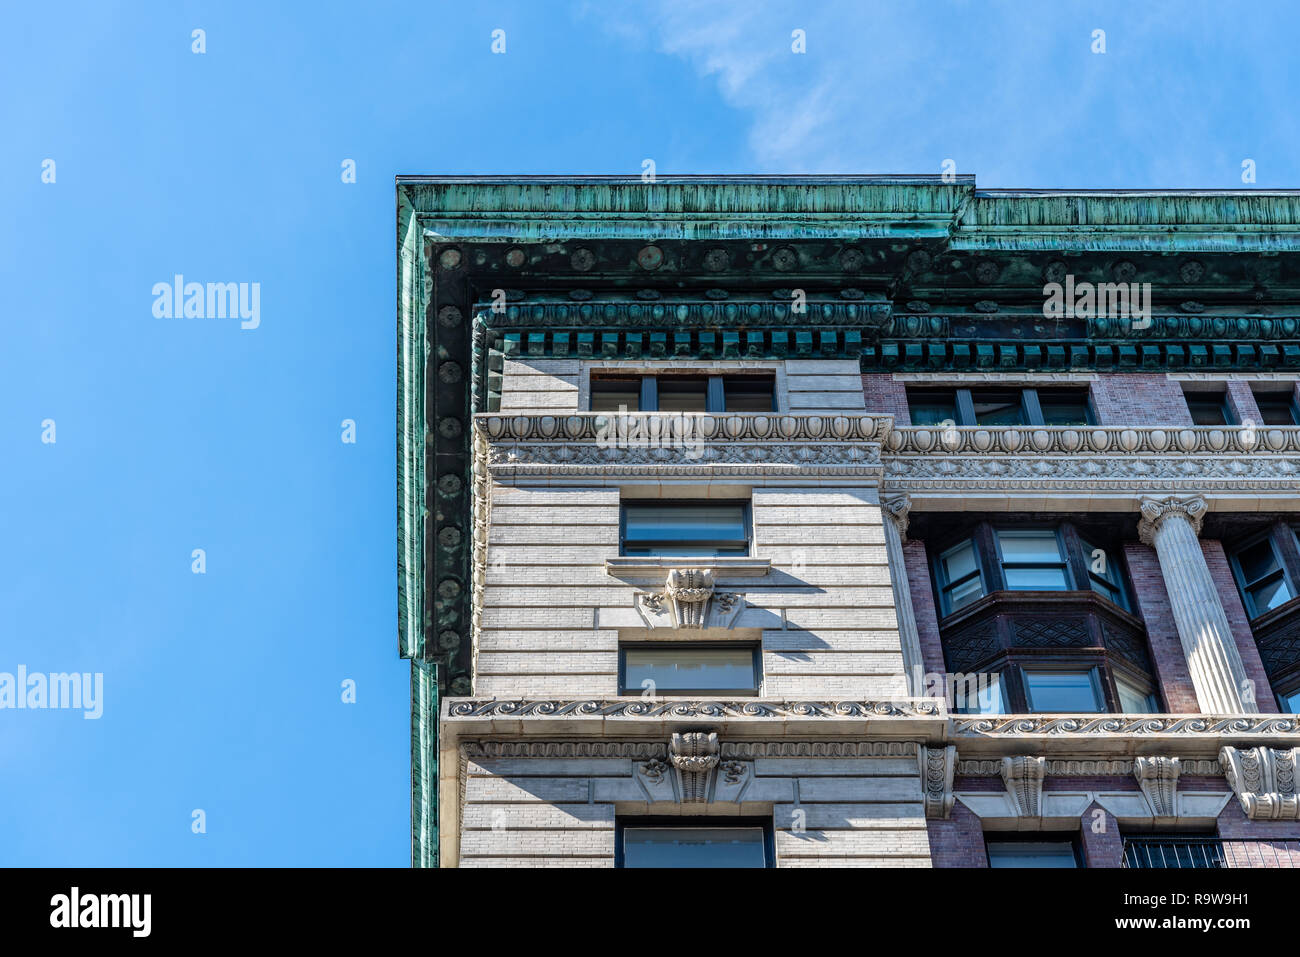 La città di New York, Stati Uniti d'America - 25 Giugno 2018: basso angolo di visione del lussuoso edificio di appartamenti a Tribeca distretto del Nord. Foto Stock